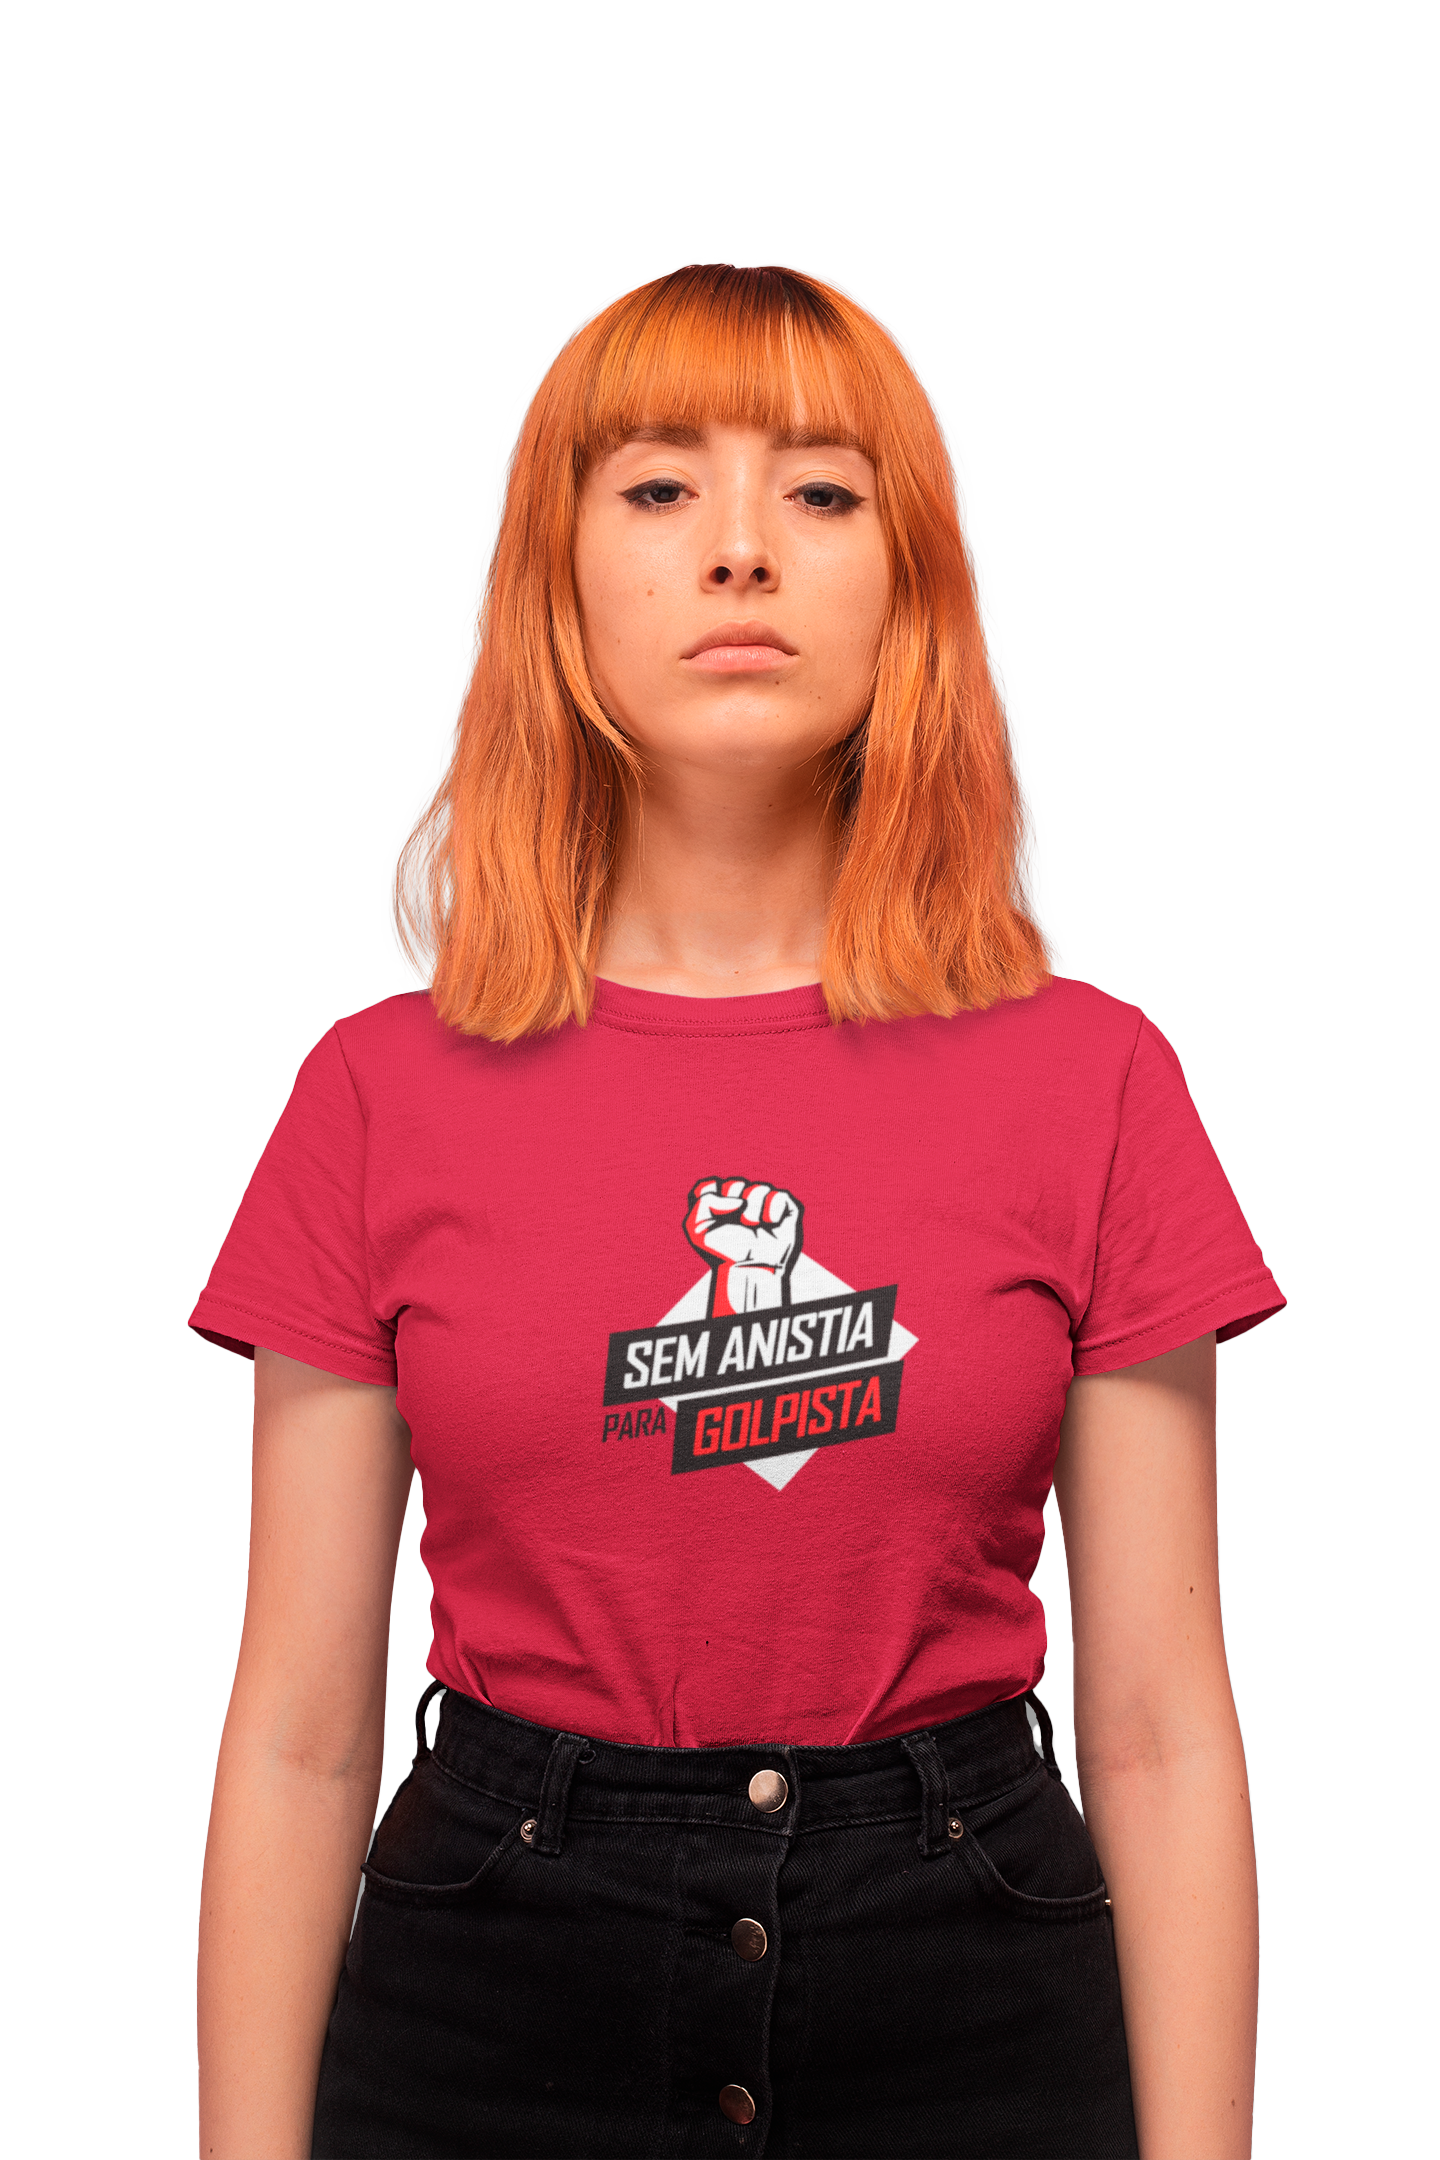 Camiseta Feminina "Sem anistia para golpista"